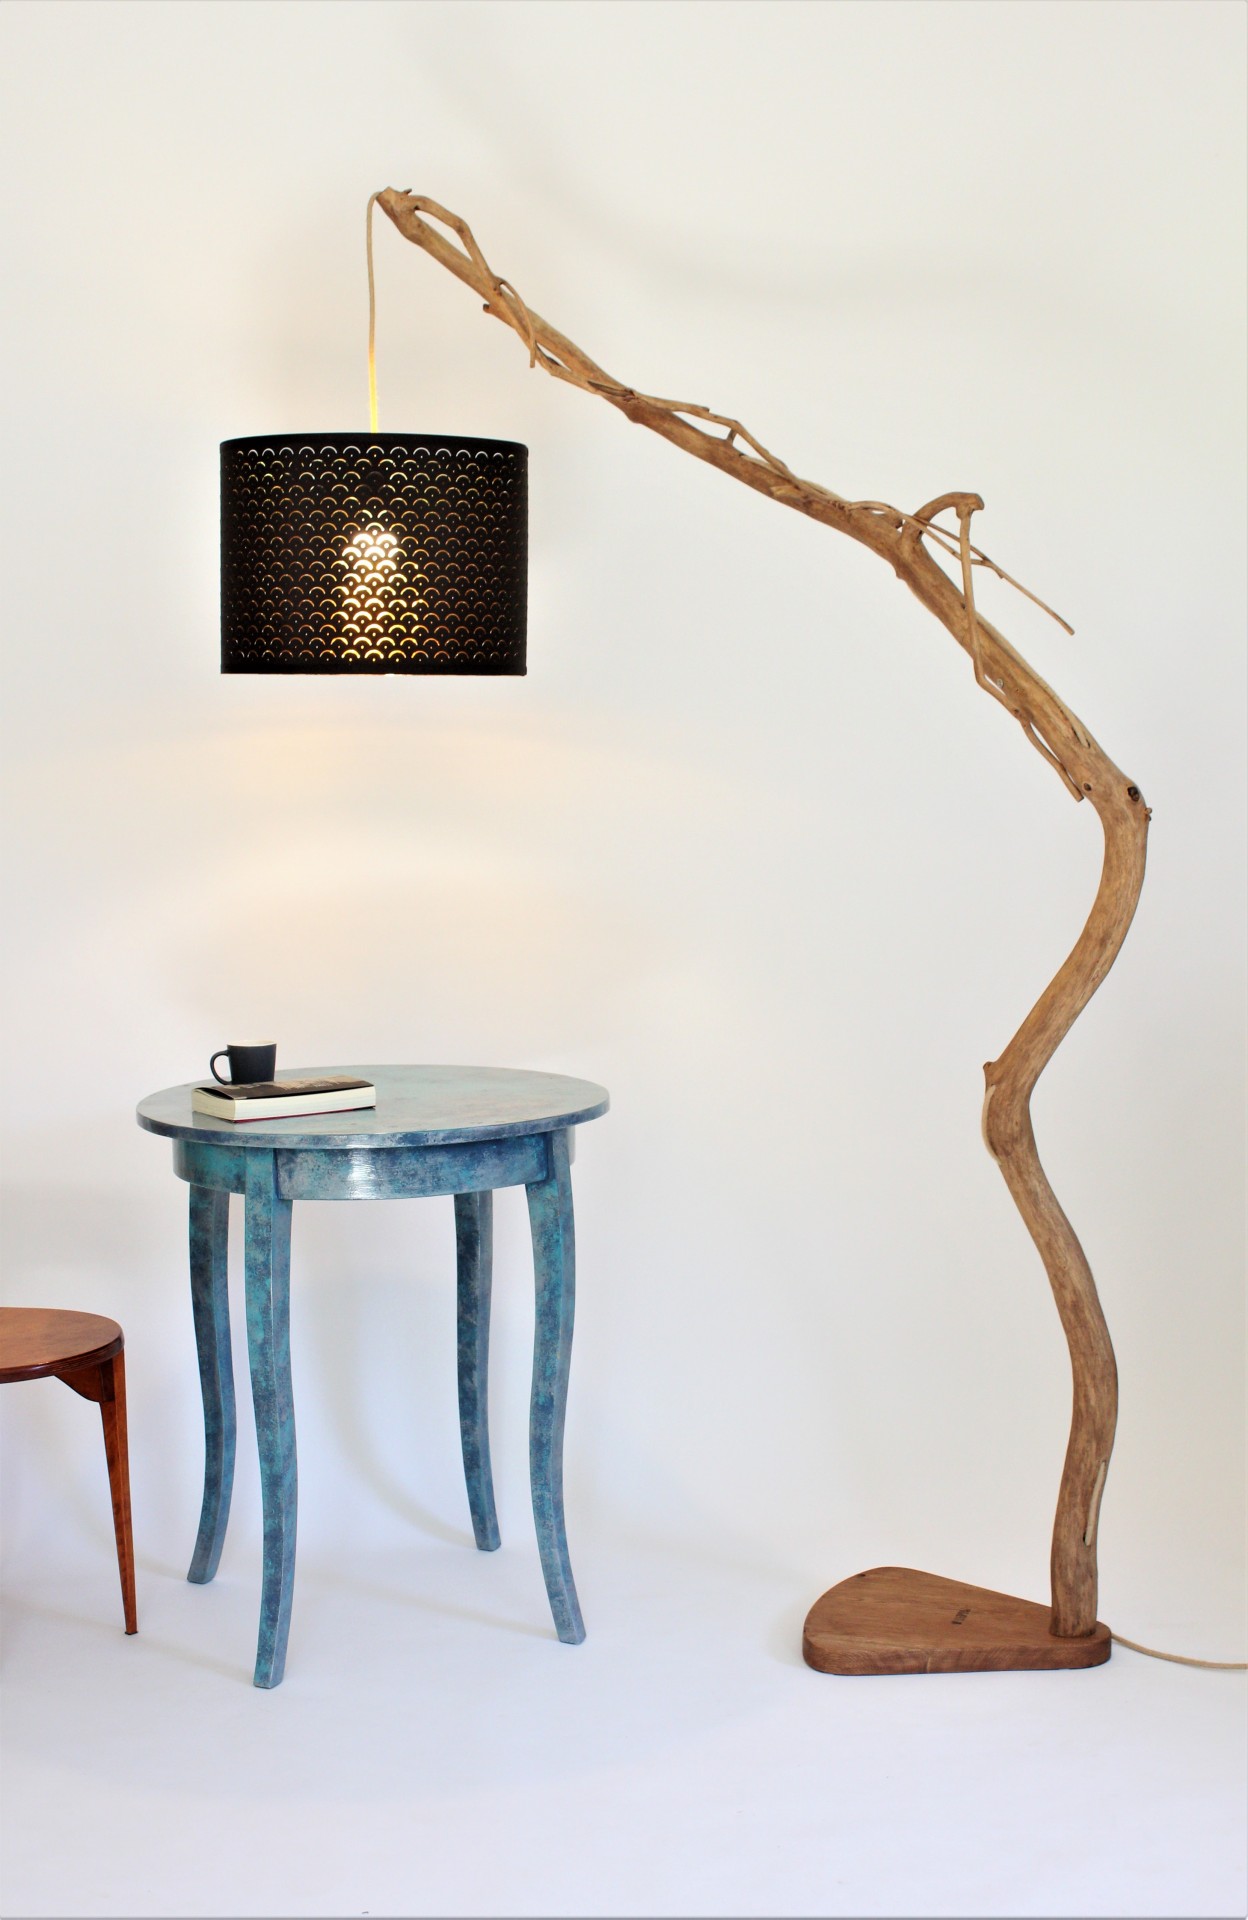 Lampa podłogowa z gałęzi dębowej -71- Lampa nad stół, lampa łukowa, regulowana wysokość klosza 5